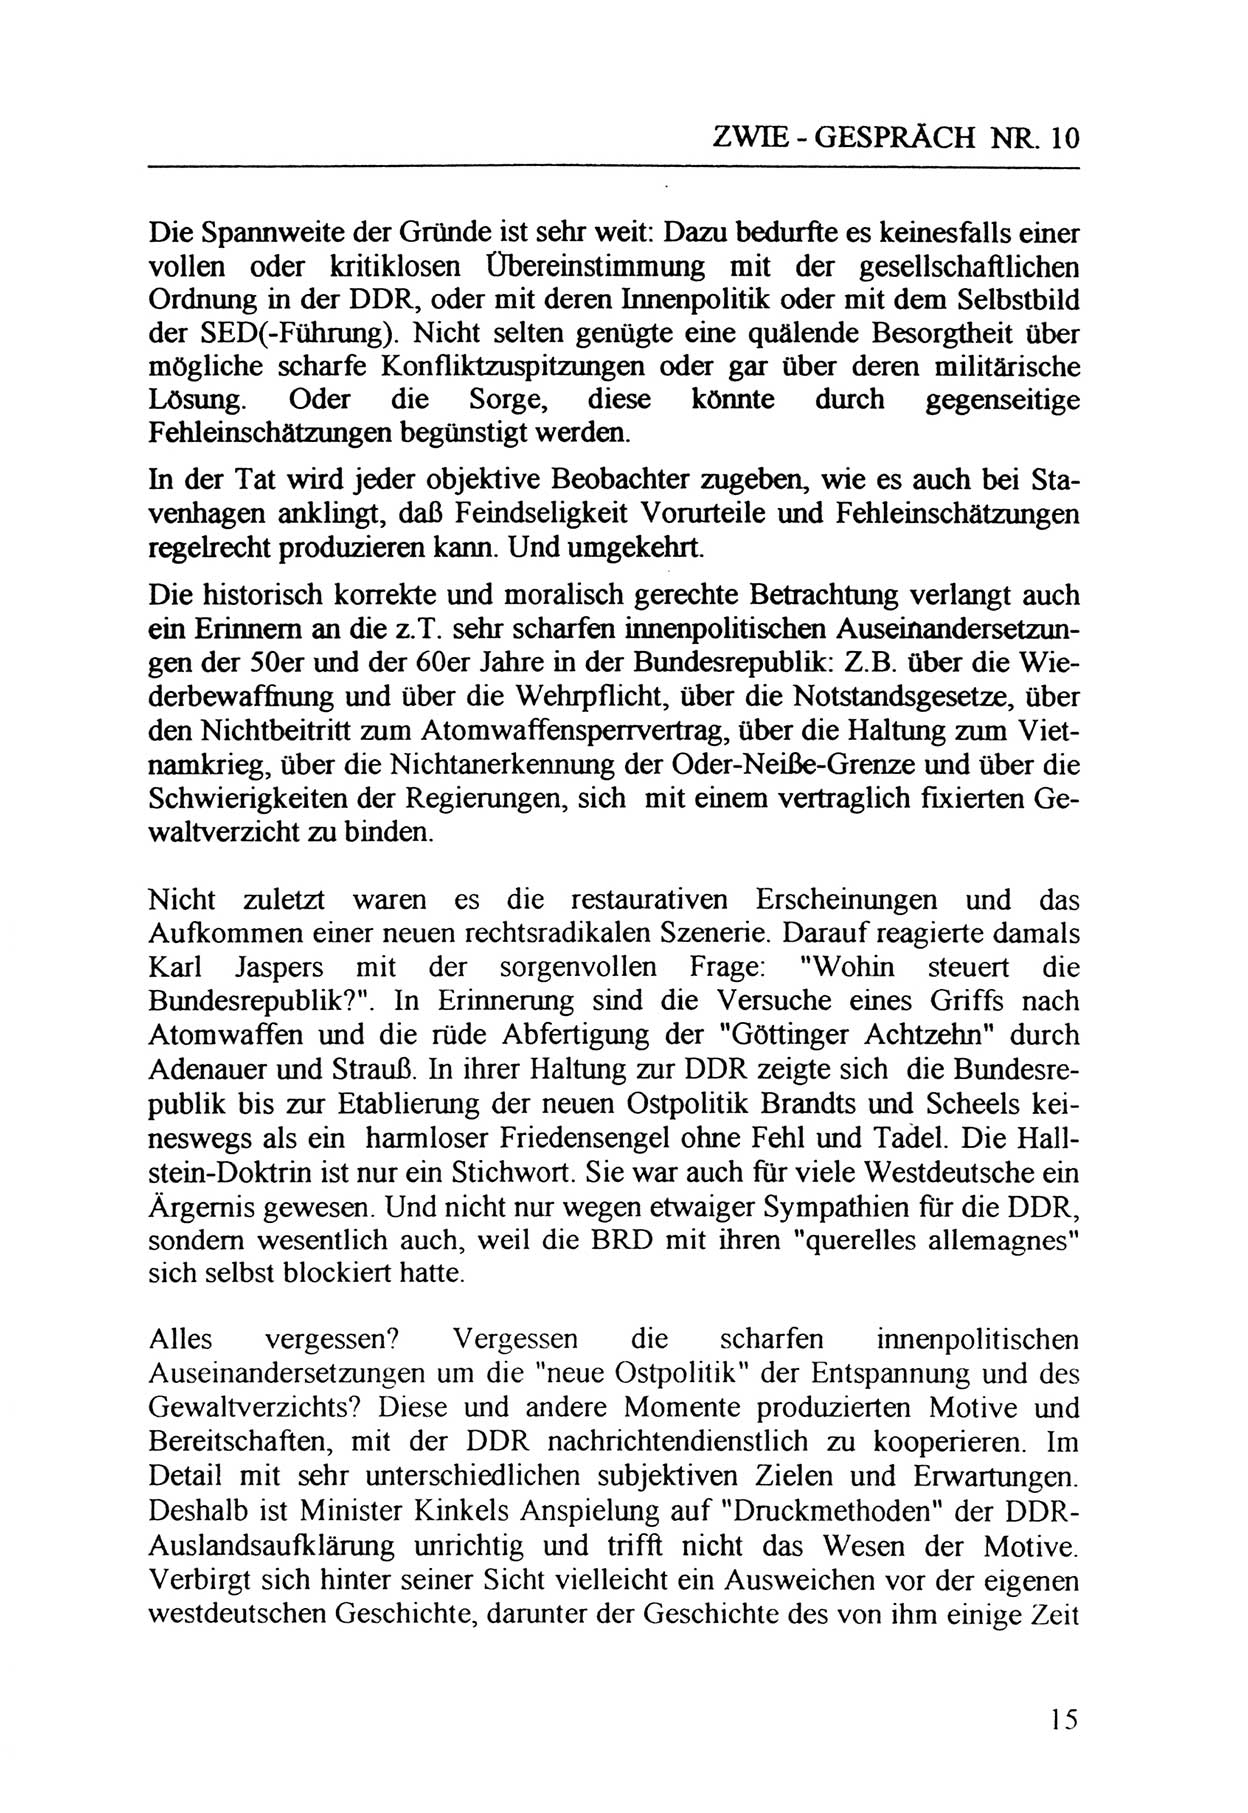 Zwie-Gespräch, Beiträge zur Aufarbeitung der Staatssicherheits-Vergangenheit [Deutsche Demokratische Republik (DDR)], Ausgabe Nr. 10, Berlin 1992, Seite 15 (Zwie-Gespr. Ausg. 10 1992, S. 15)